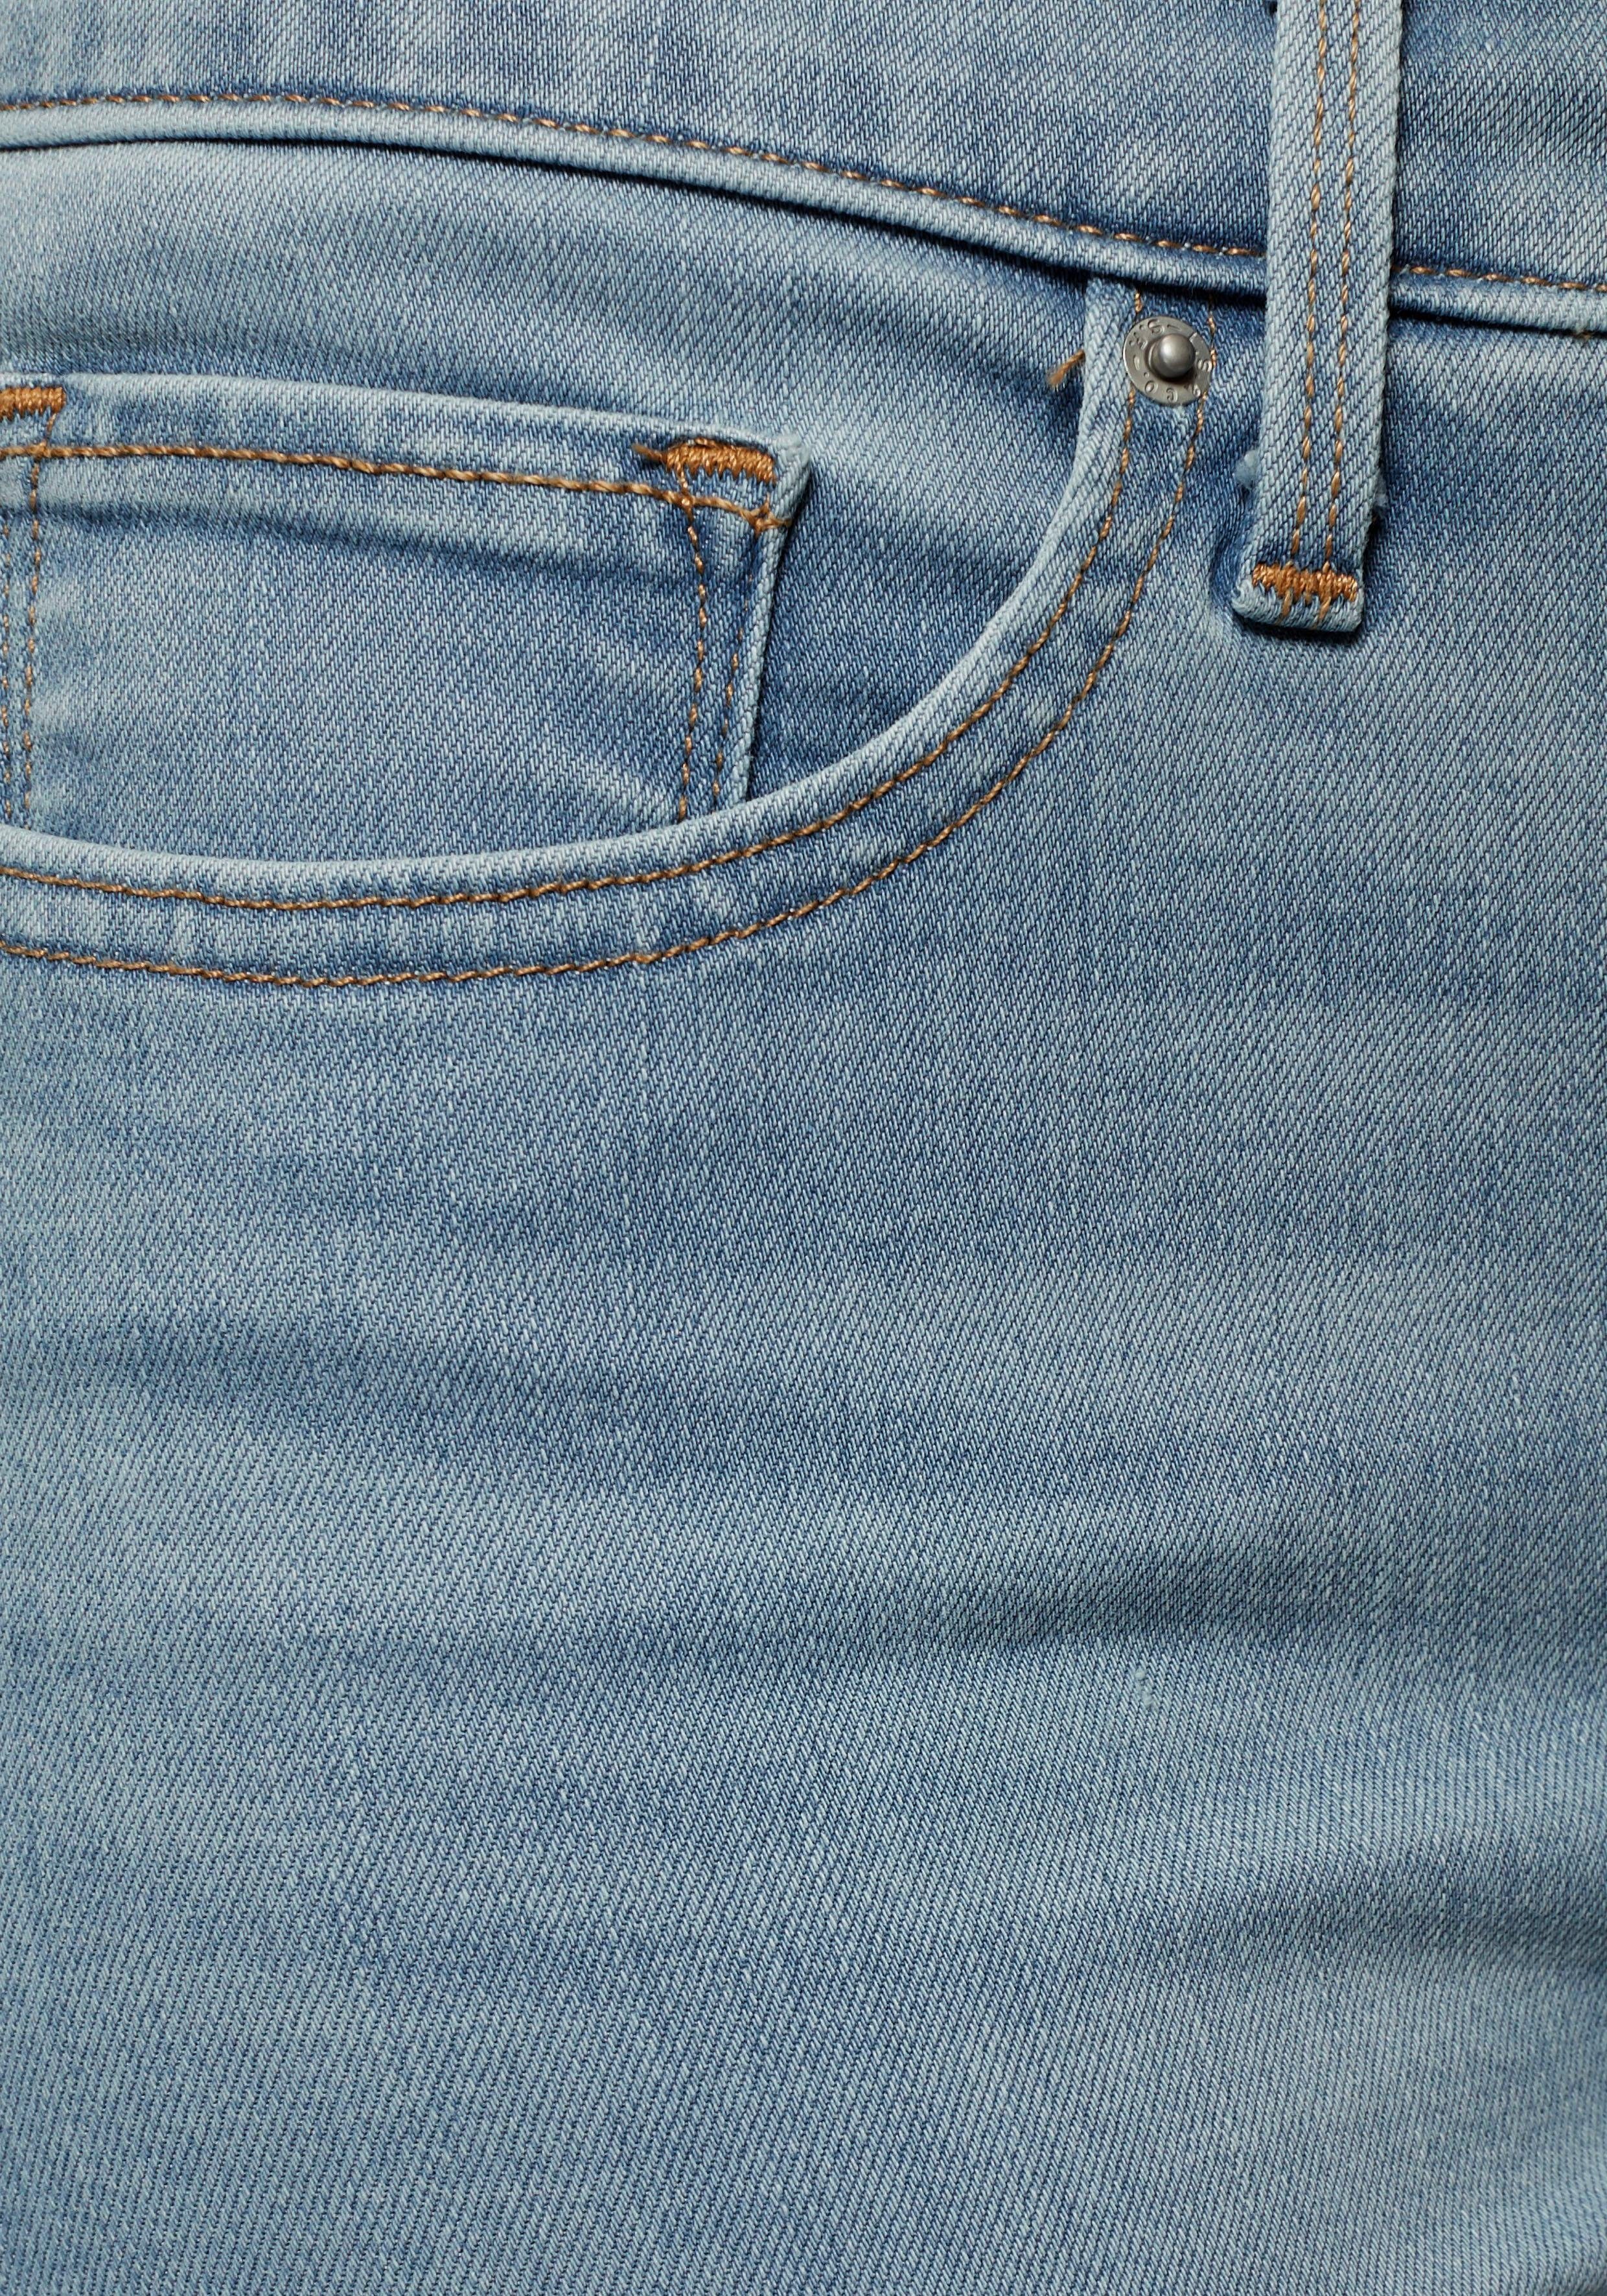 Levi's® Slim-fit-Jeans 311 im Skinny 5-Pocket-Stil Salte Dew Shaping Oahu Morning